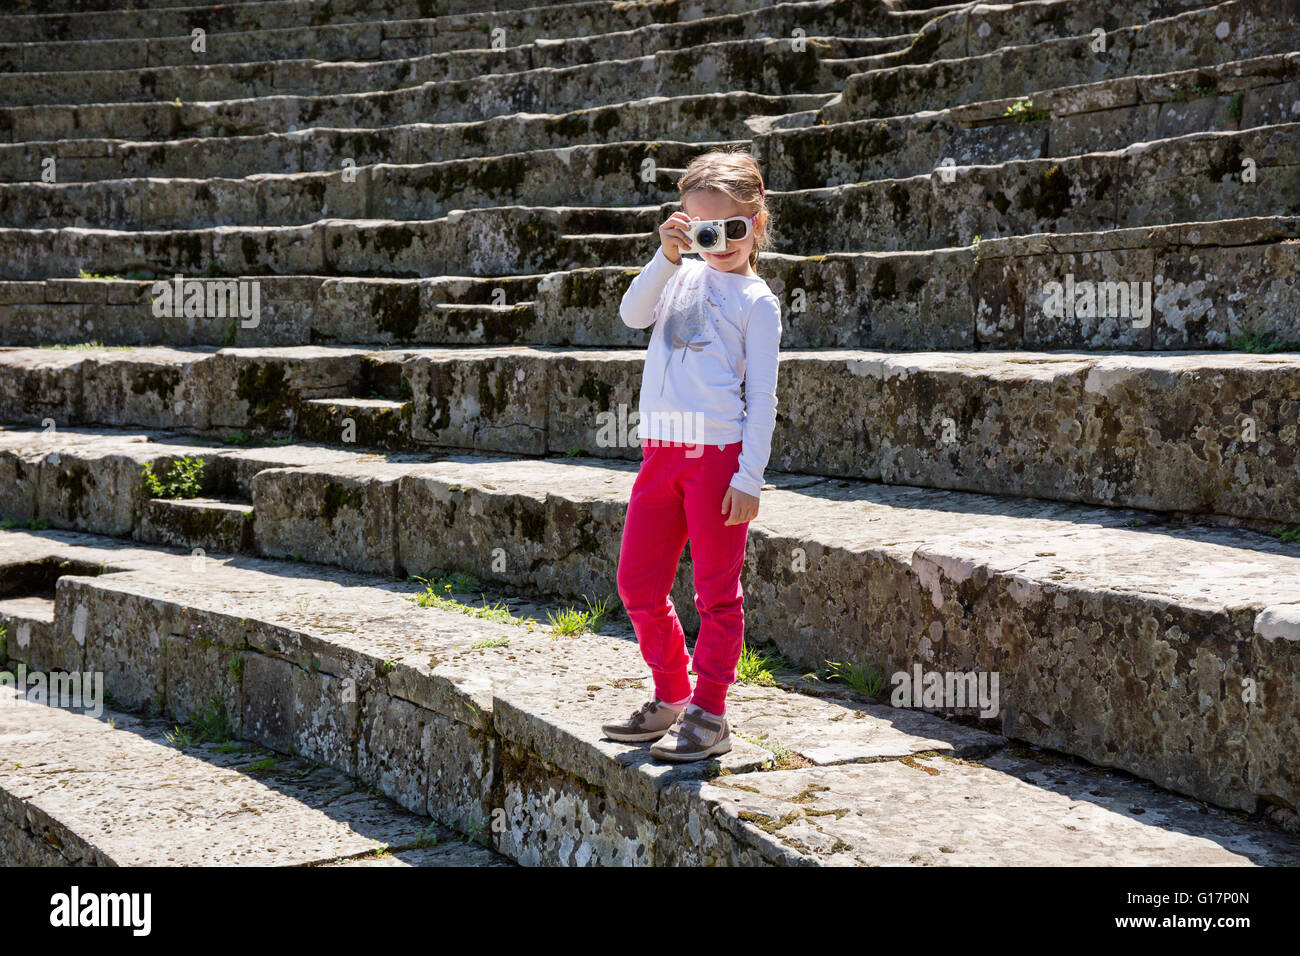 Ragazza fotografare dalla scalinata di pietra a ruderi, Firenze, Italia Foto Stock